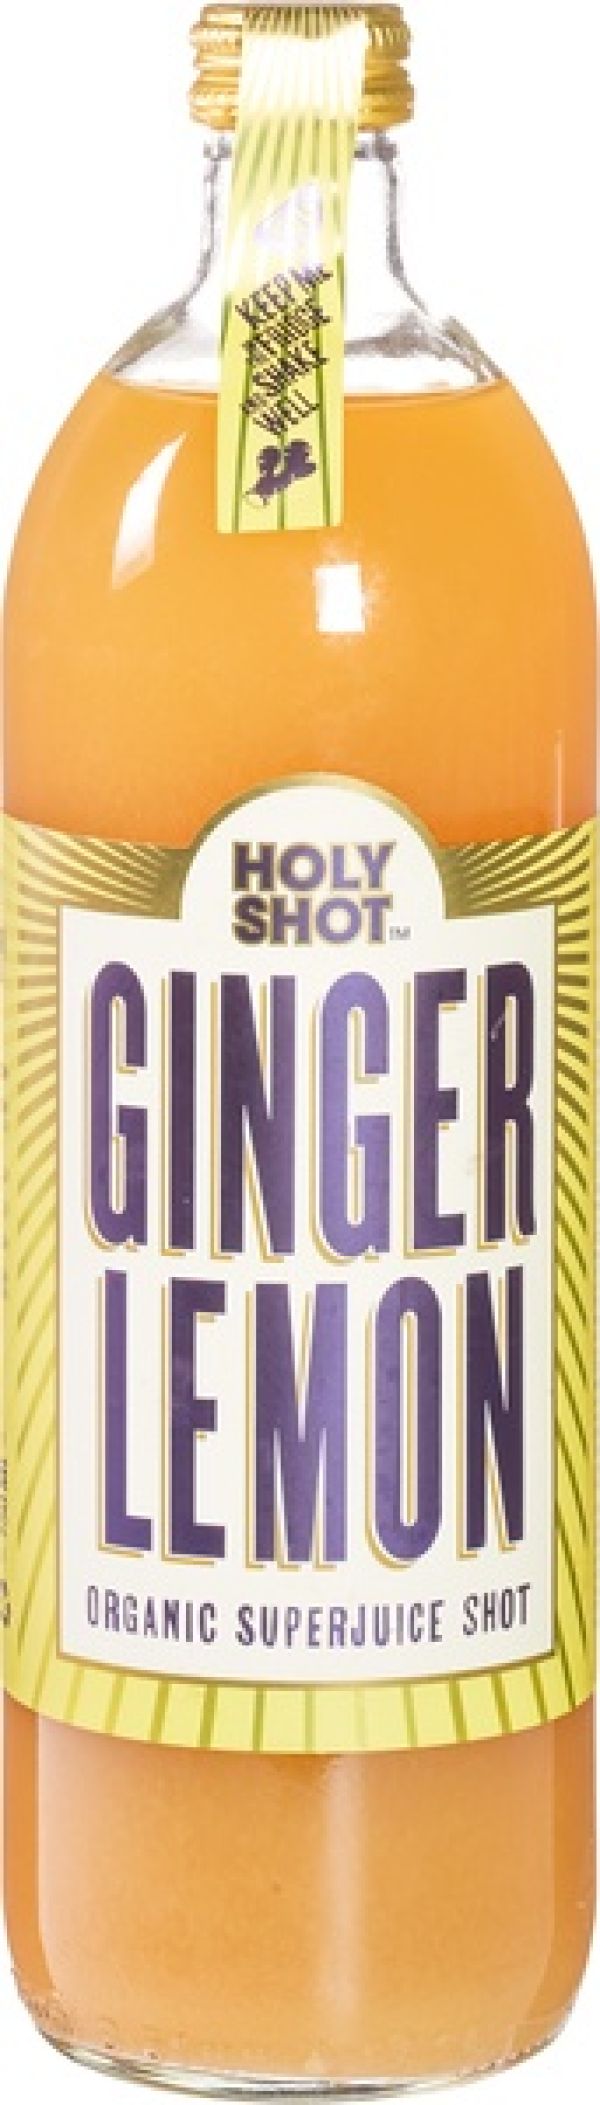 Ginger Lemon